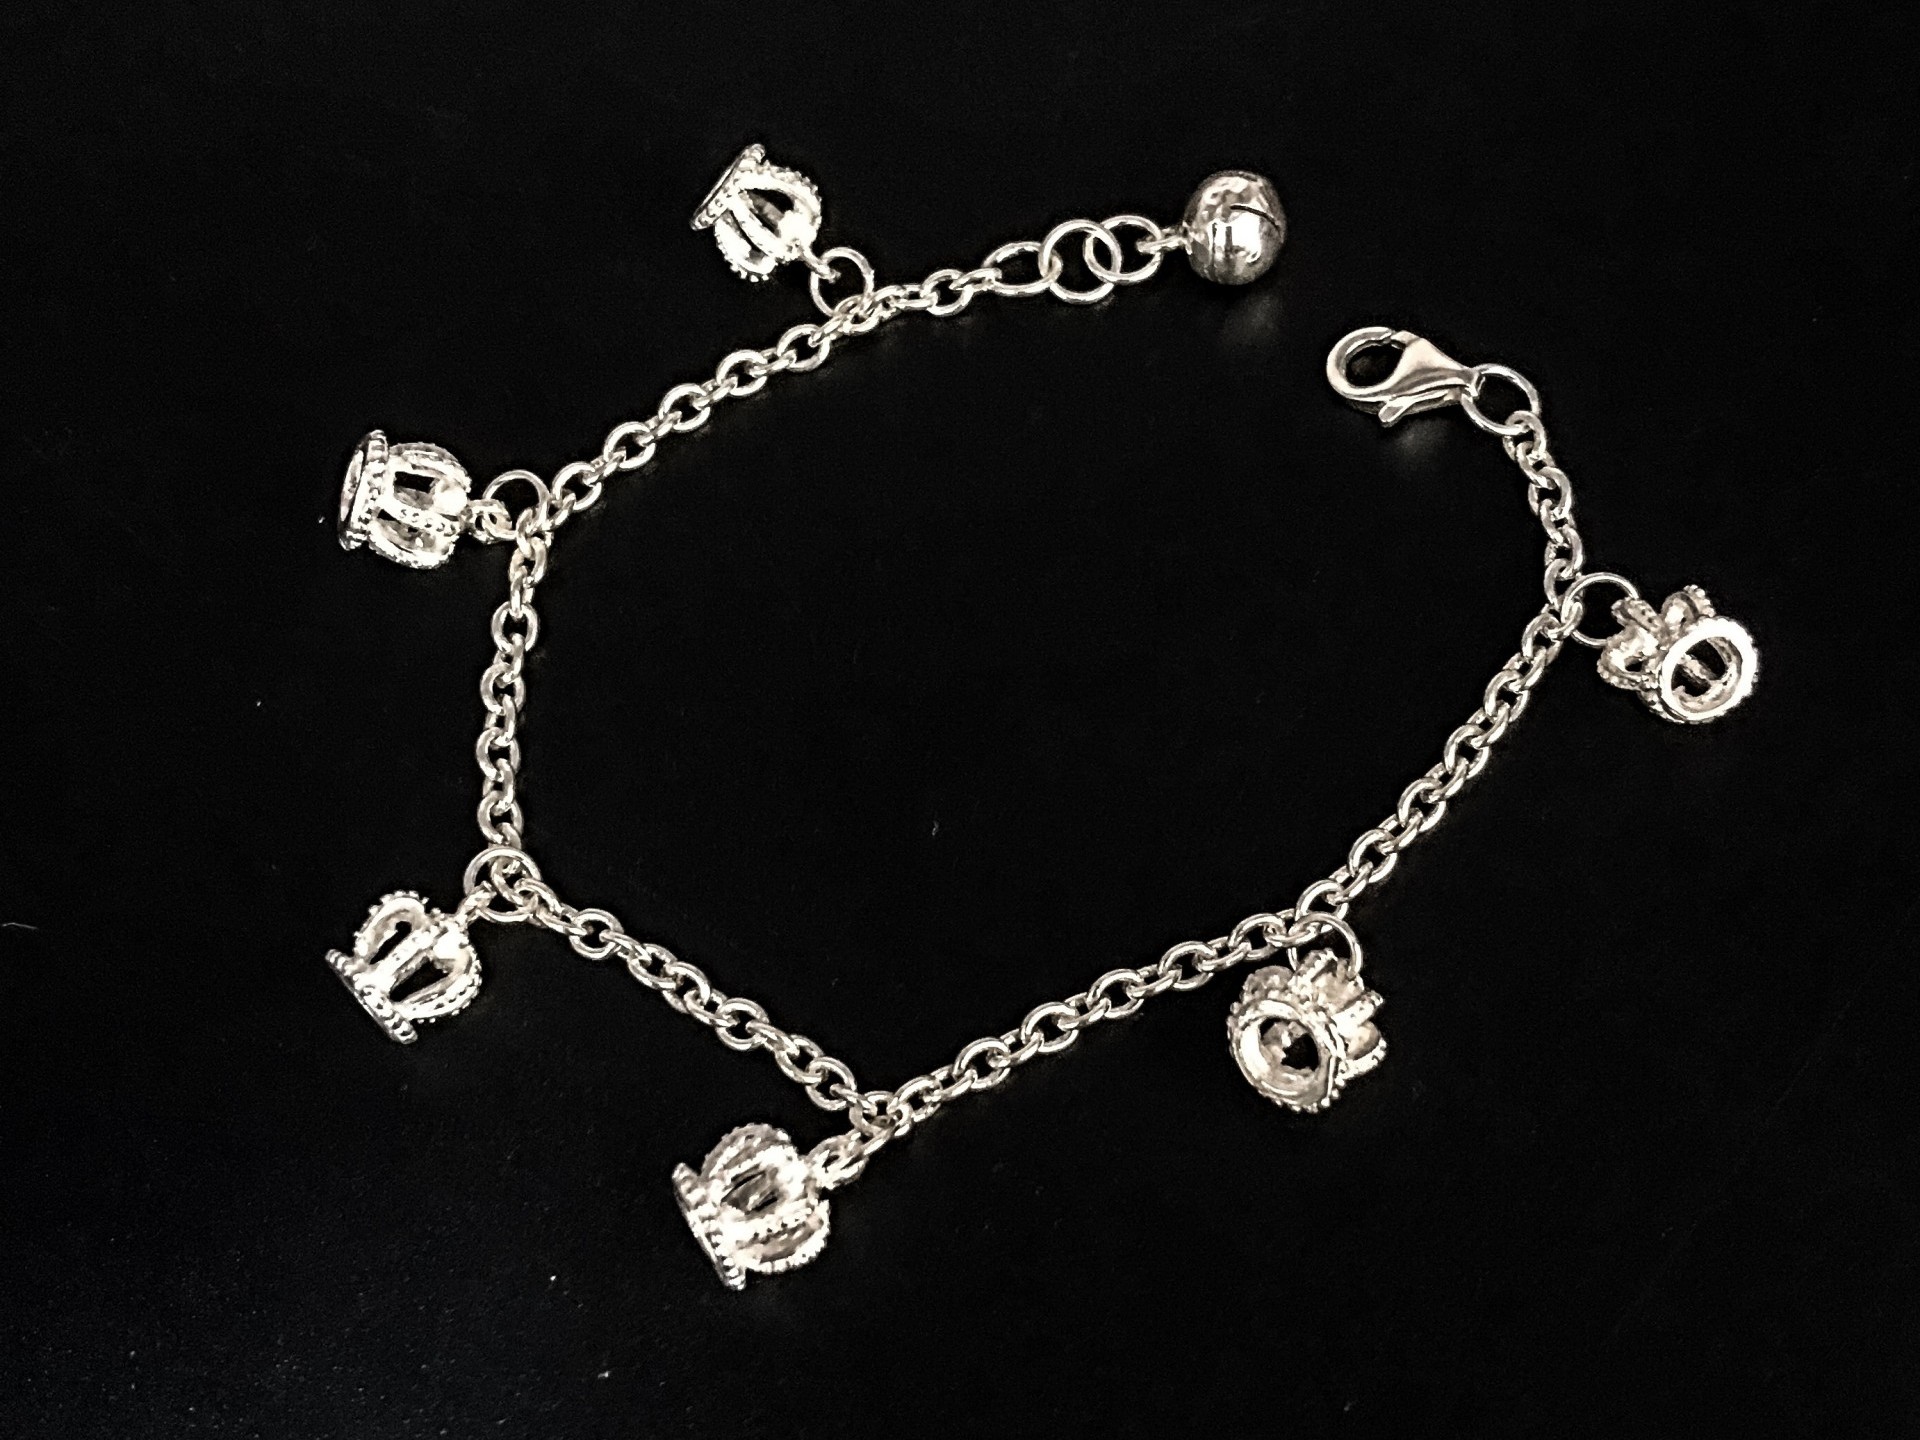 Silver dynamic series (bracelets)